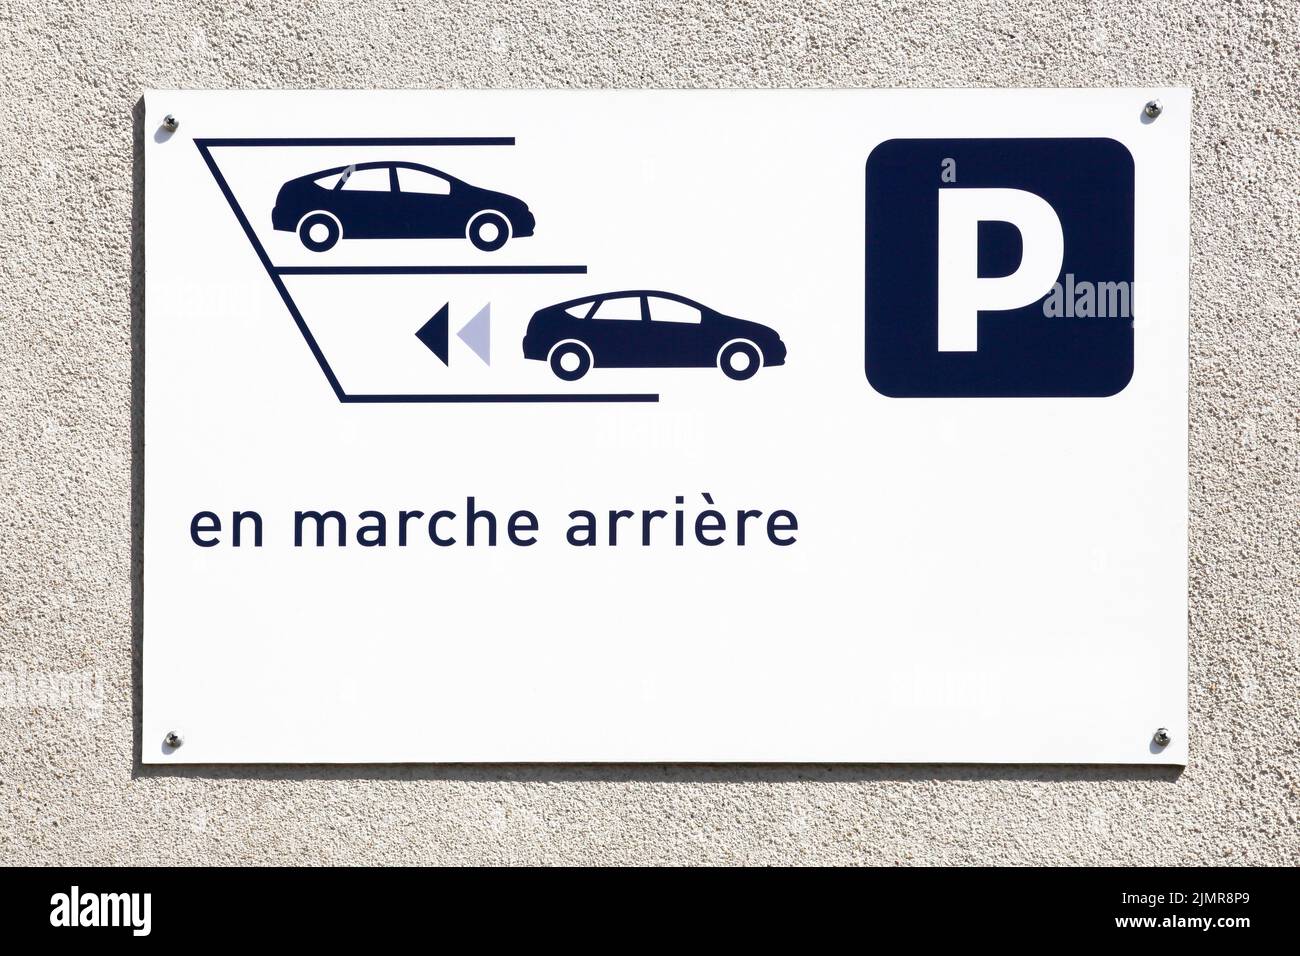 Cartello di sola retromarcia su un muro chiamato Stationner en marche arriere in lingua francese Foto Stock